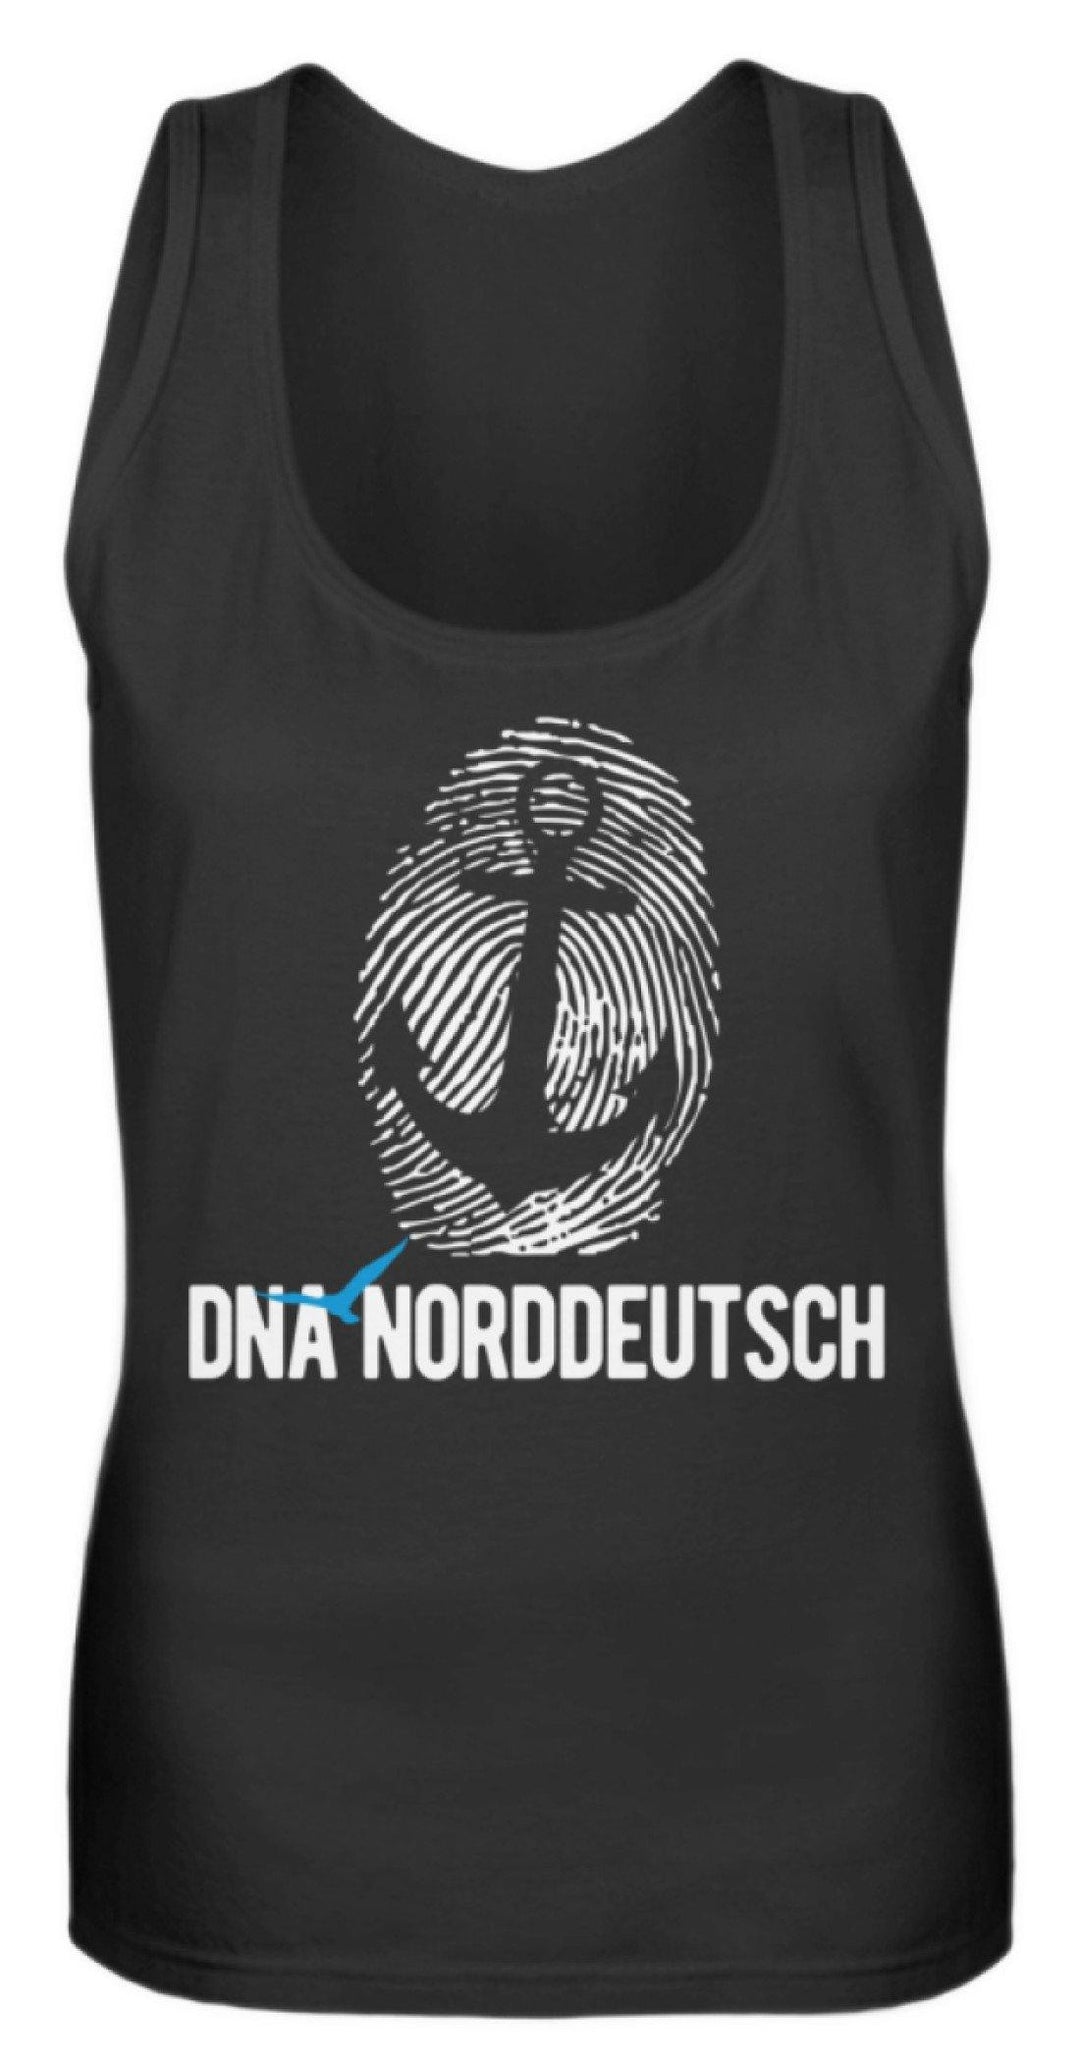 DNA Norddeutsch  - Frauen Tanktop - Words on Shirts Sag es mit dem Mittelfinger Shirts Hoodies Sweatshirt Taschen Gymsack Spruch Sprüche Statement